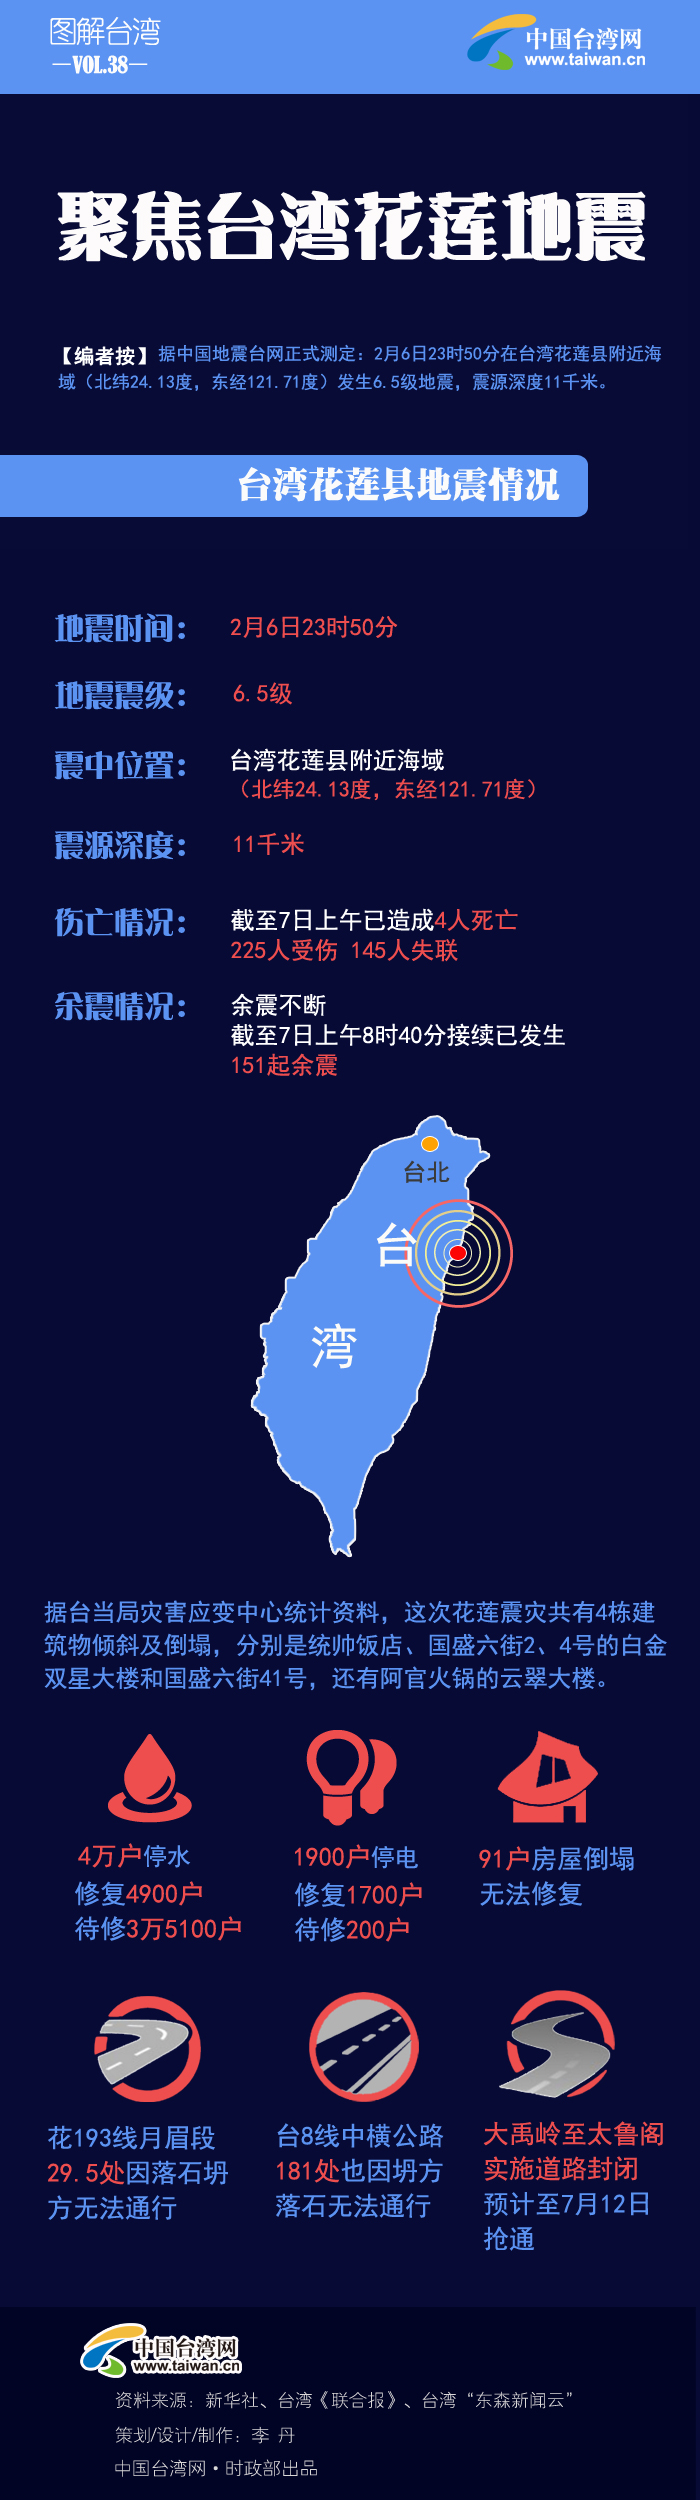 【图解】聚焦台湾花莲地震